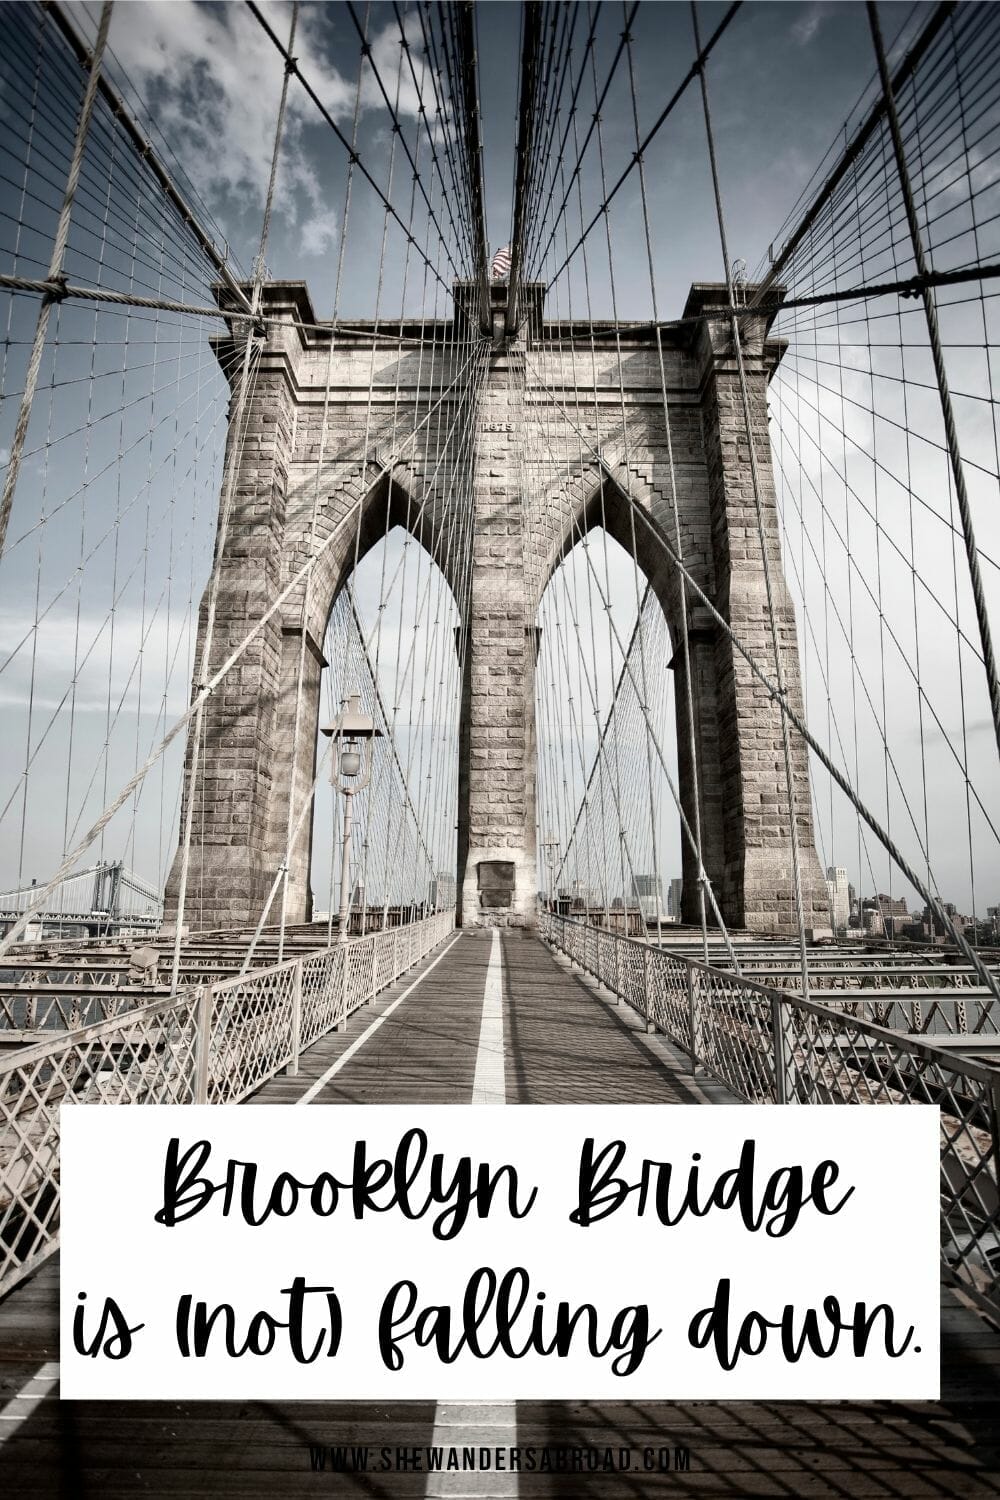 Funny Brooklyn Bridge Captions